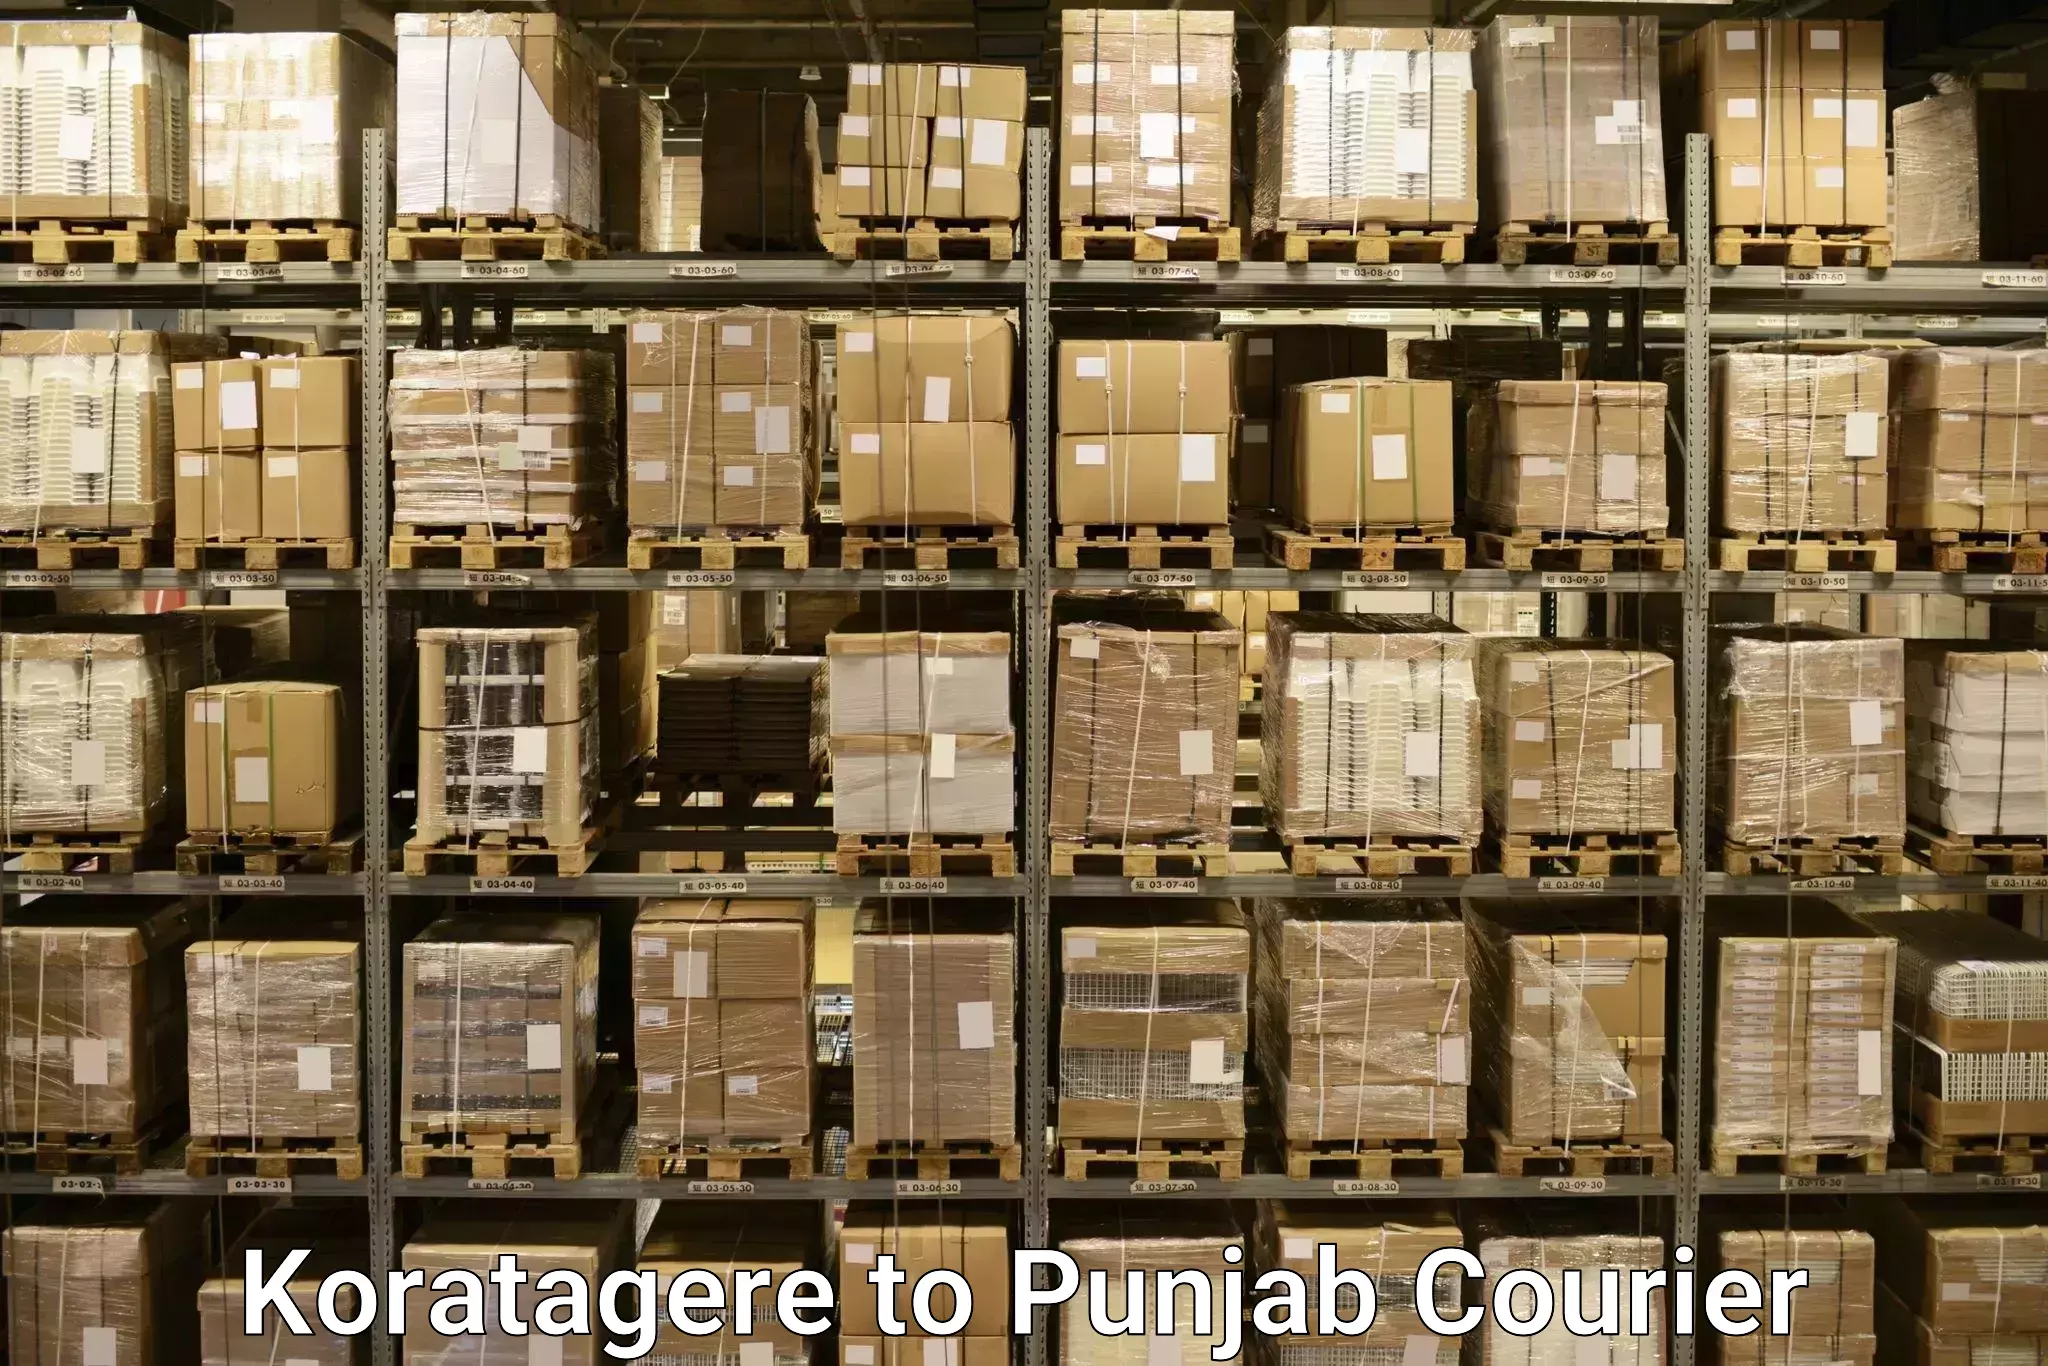 Baggage transport calculator Koratagere to Punjab